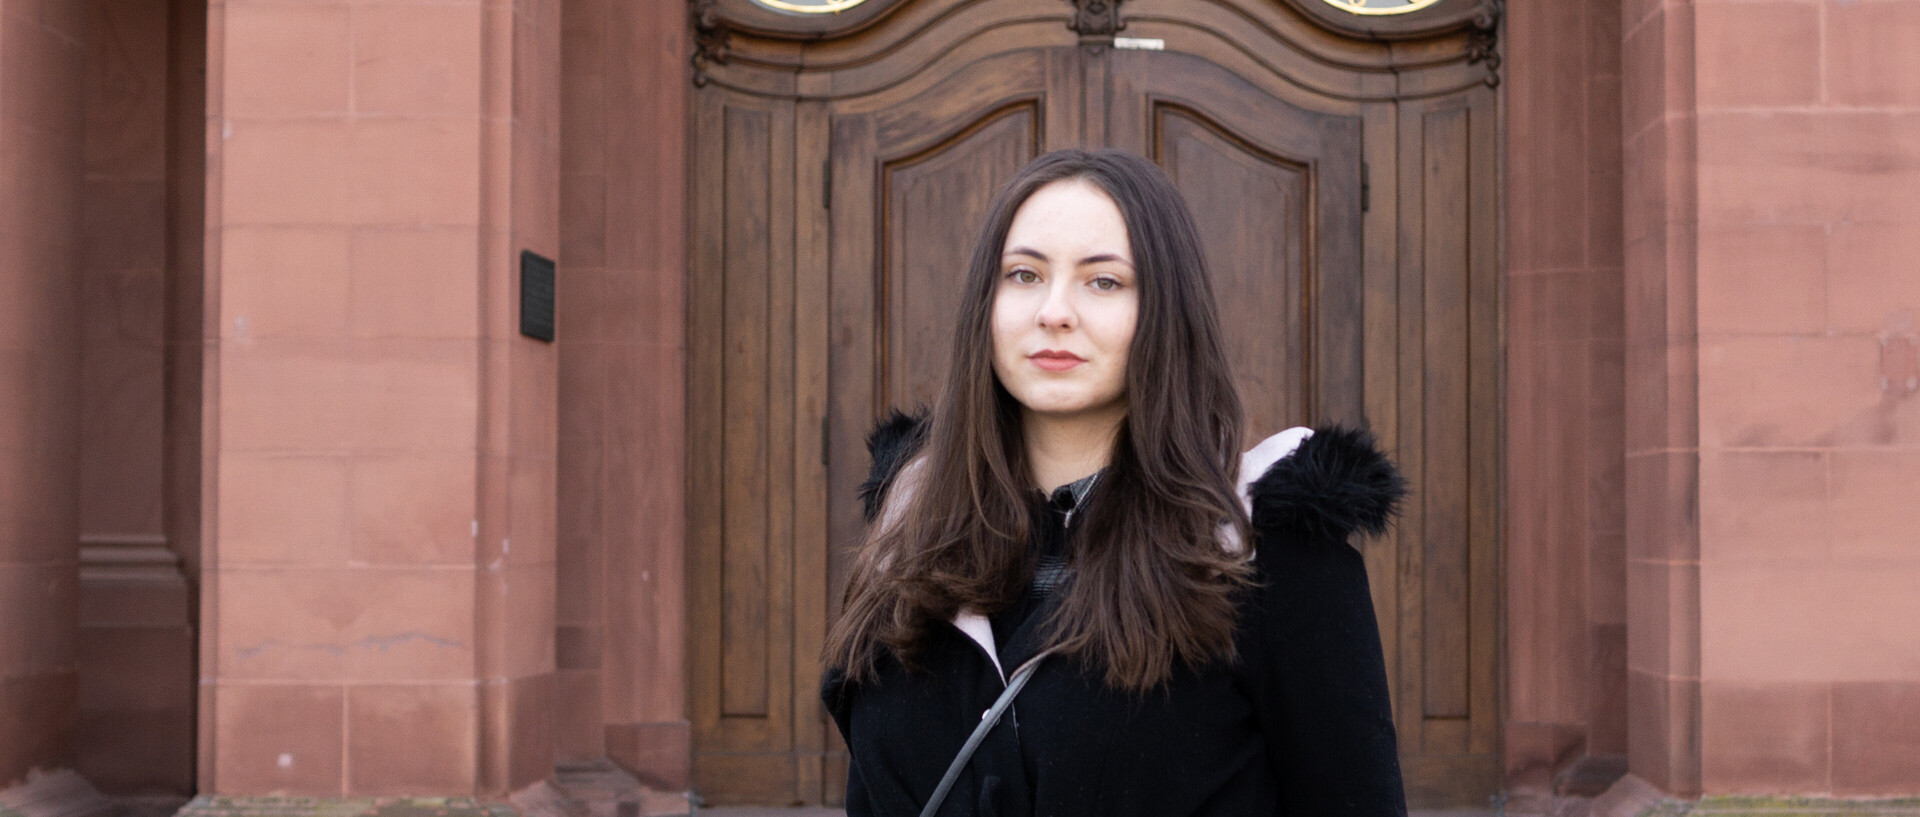 Eine Person trägt eine schwarze Jacke mit schwarzem Fell und steht vor einer braunen Schlosstüre. Die Person heißt Dijana Babic.